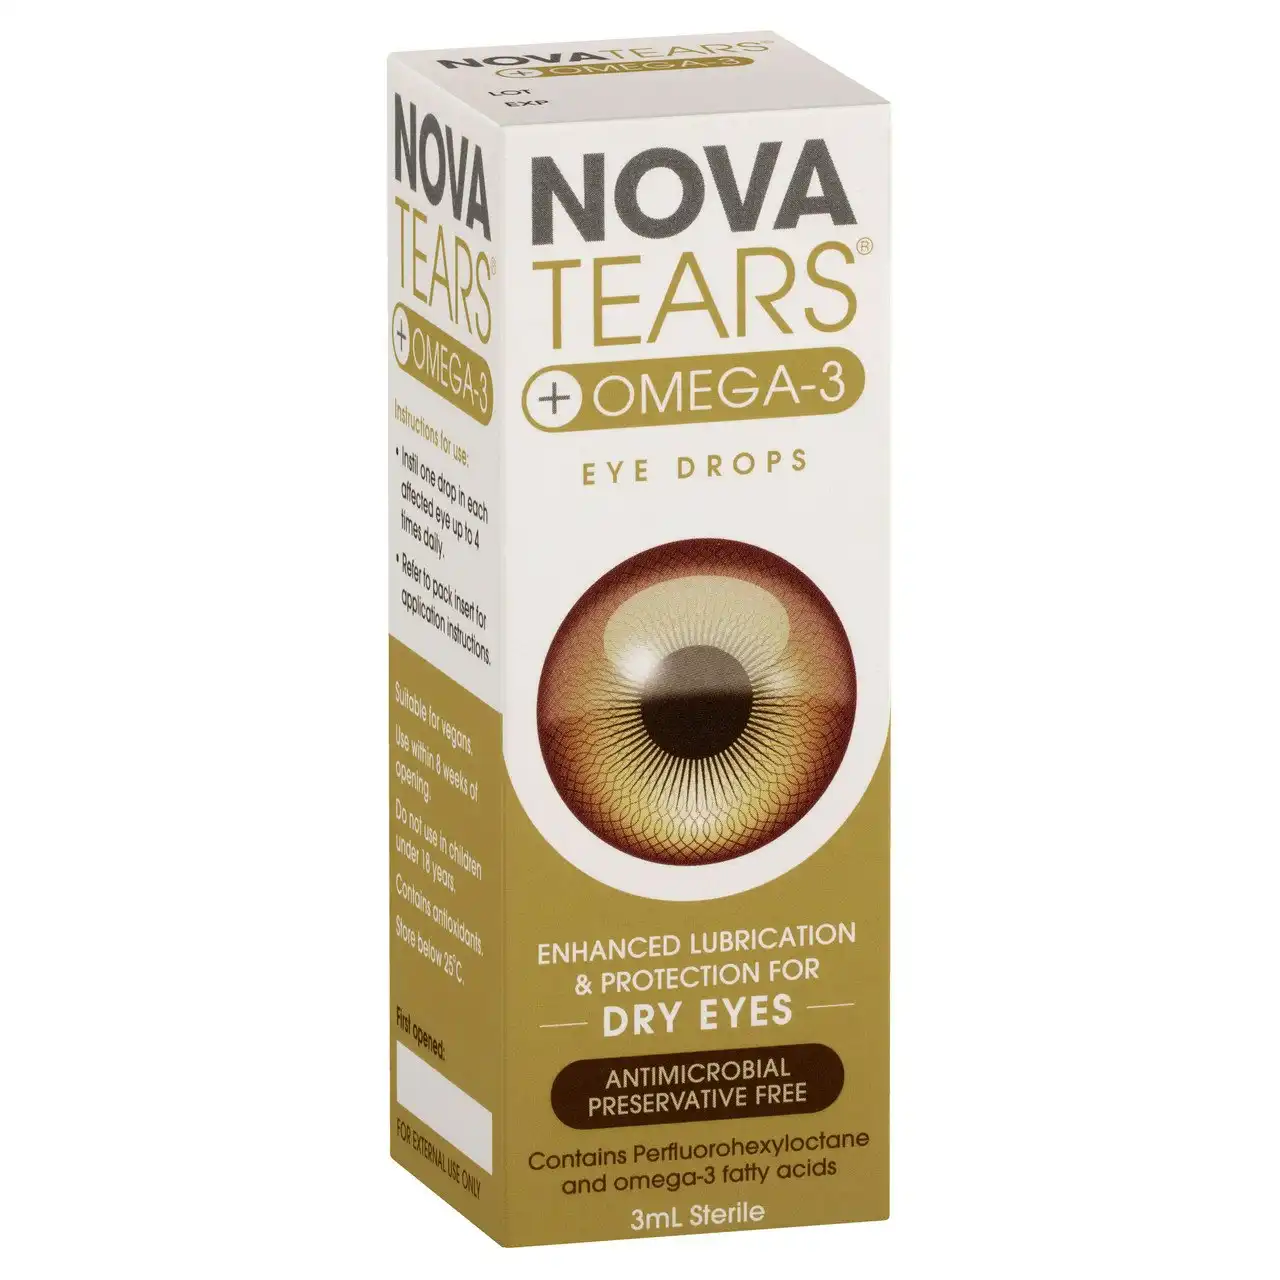 NovaTears + Omega-3 Eye Drops 3mL